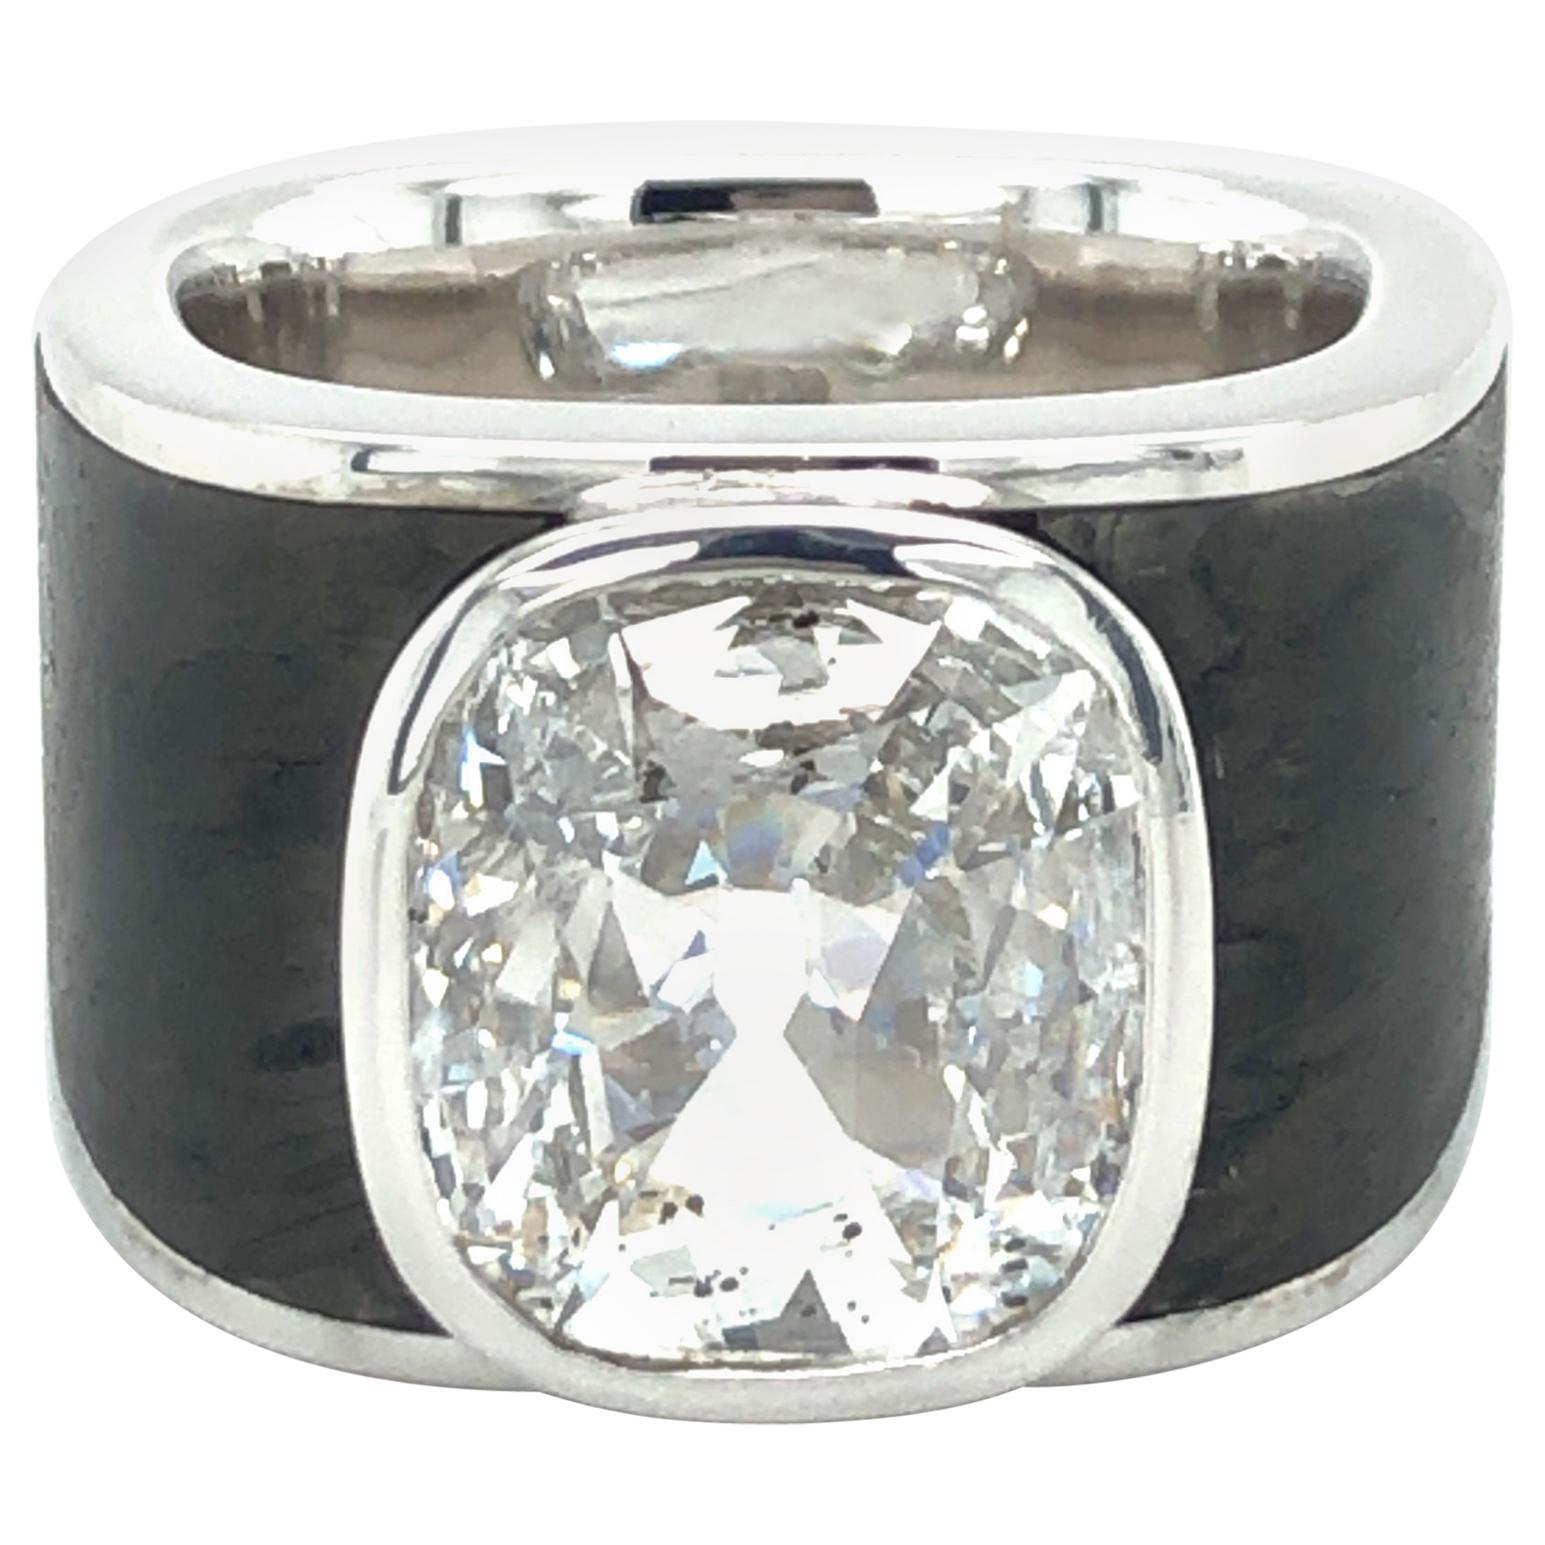 Binder Moerisch 3.41 Carat Diamond Ring in 18 Karat White Gold and Carbon